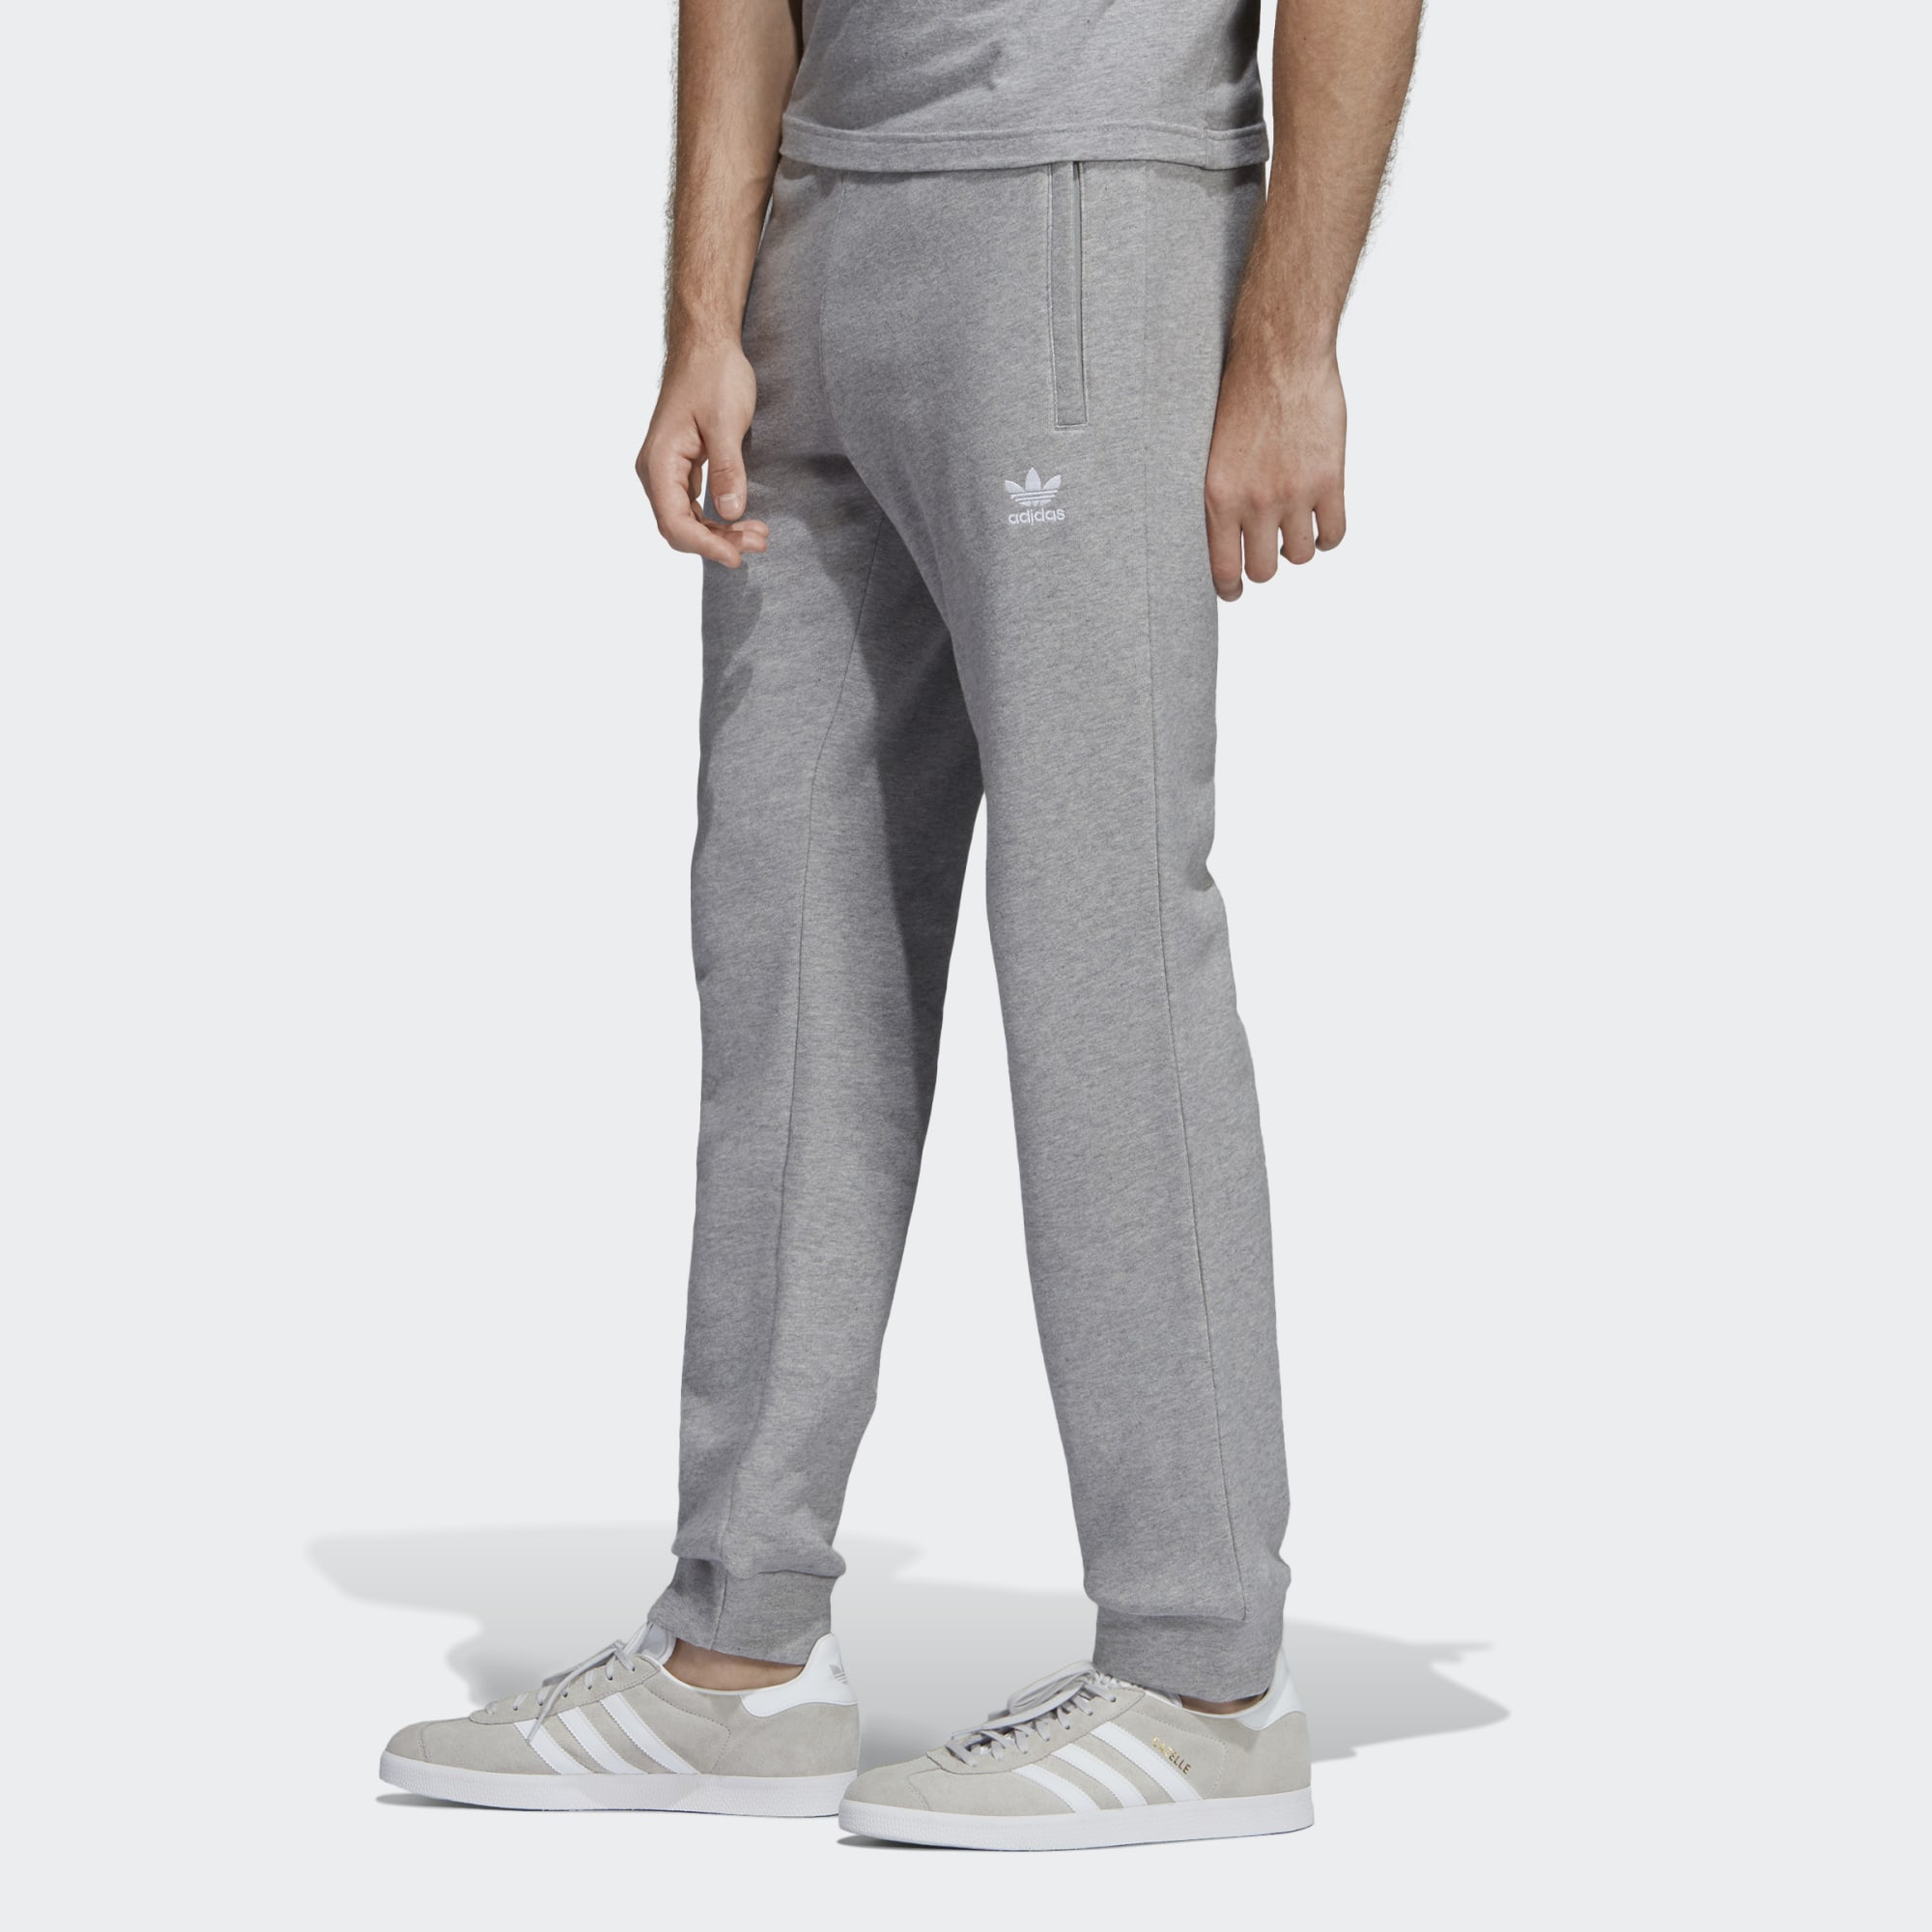 Adidas Originals Mens Trefoil Essentials 3-Stripes Pants, 45% OFF